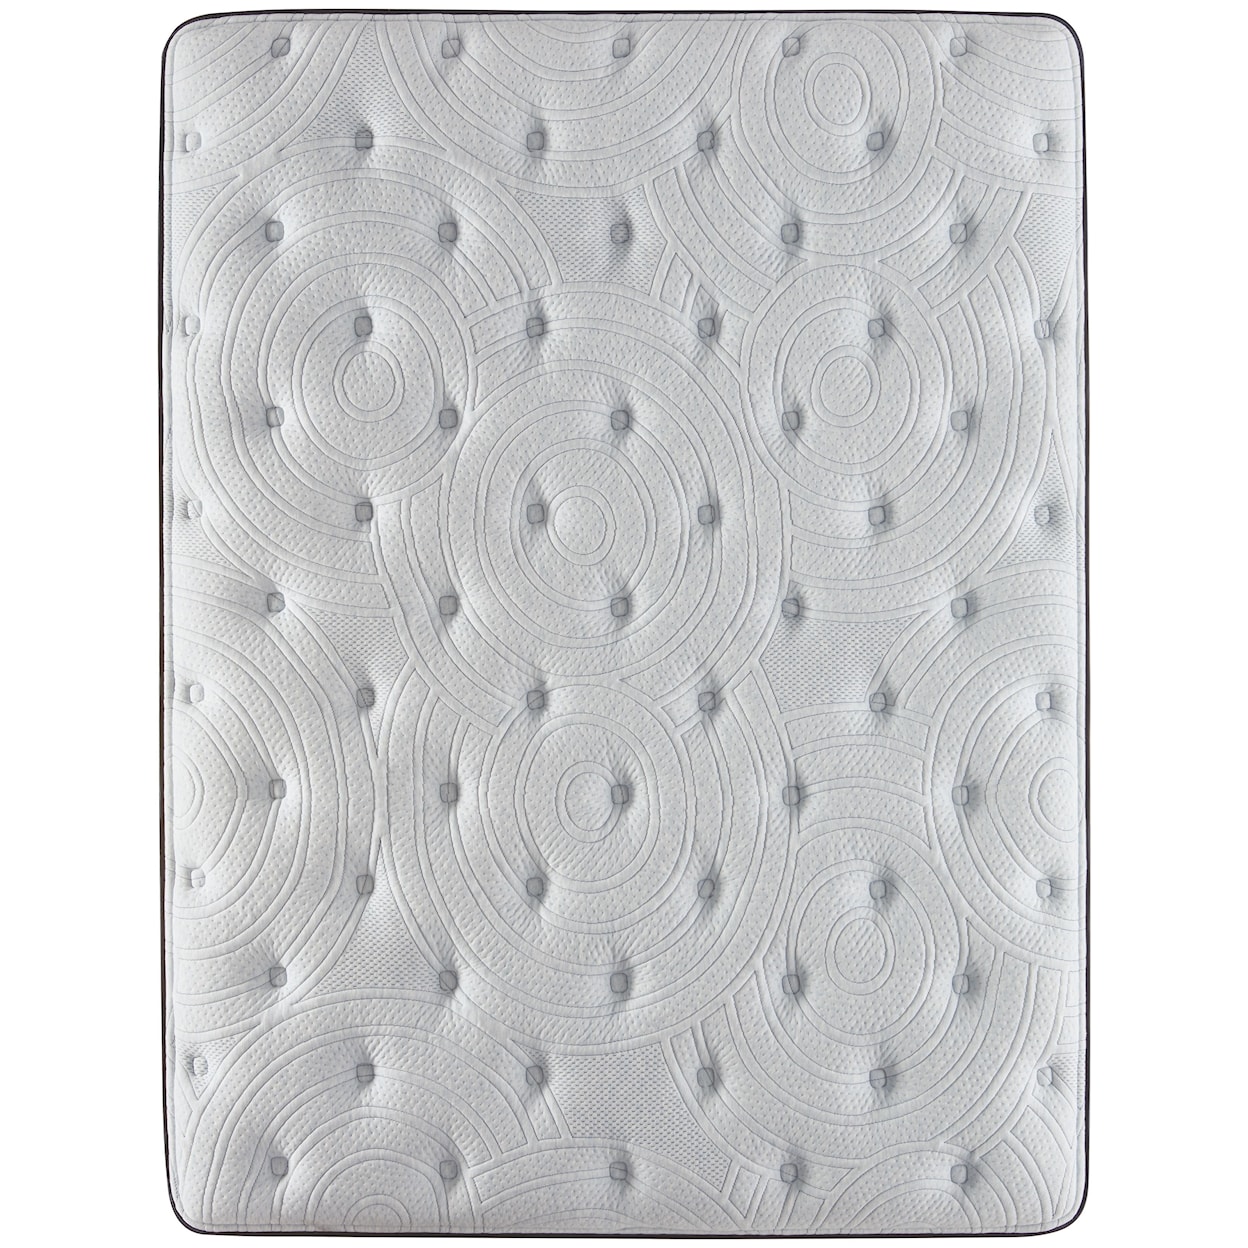 Serta Renewed Sleep Firm PT Twin XL 17" Firm Pillow Top Mattress